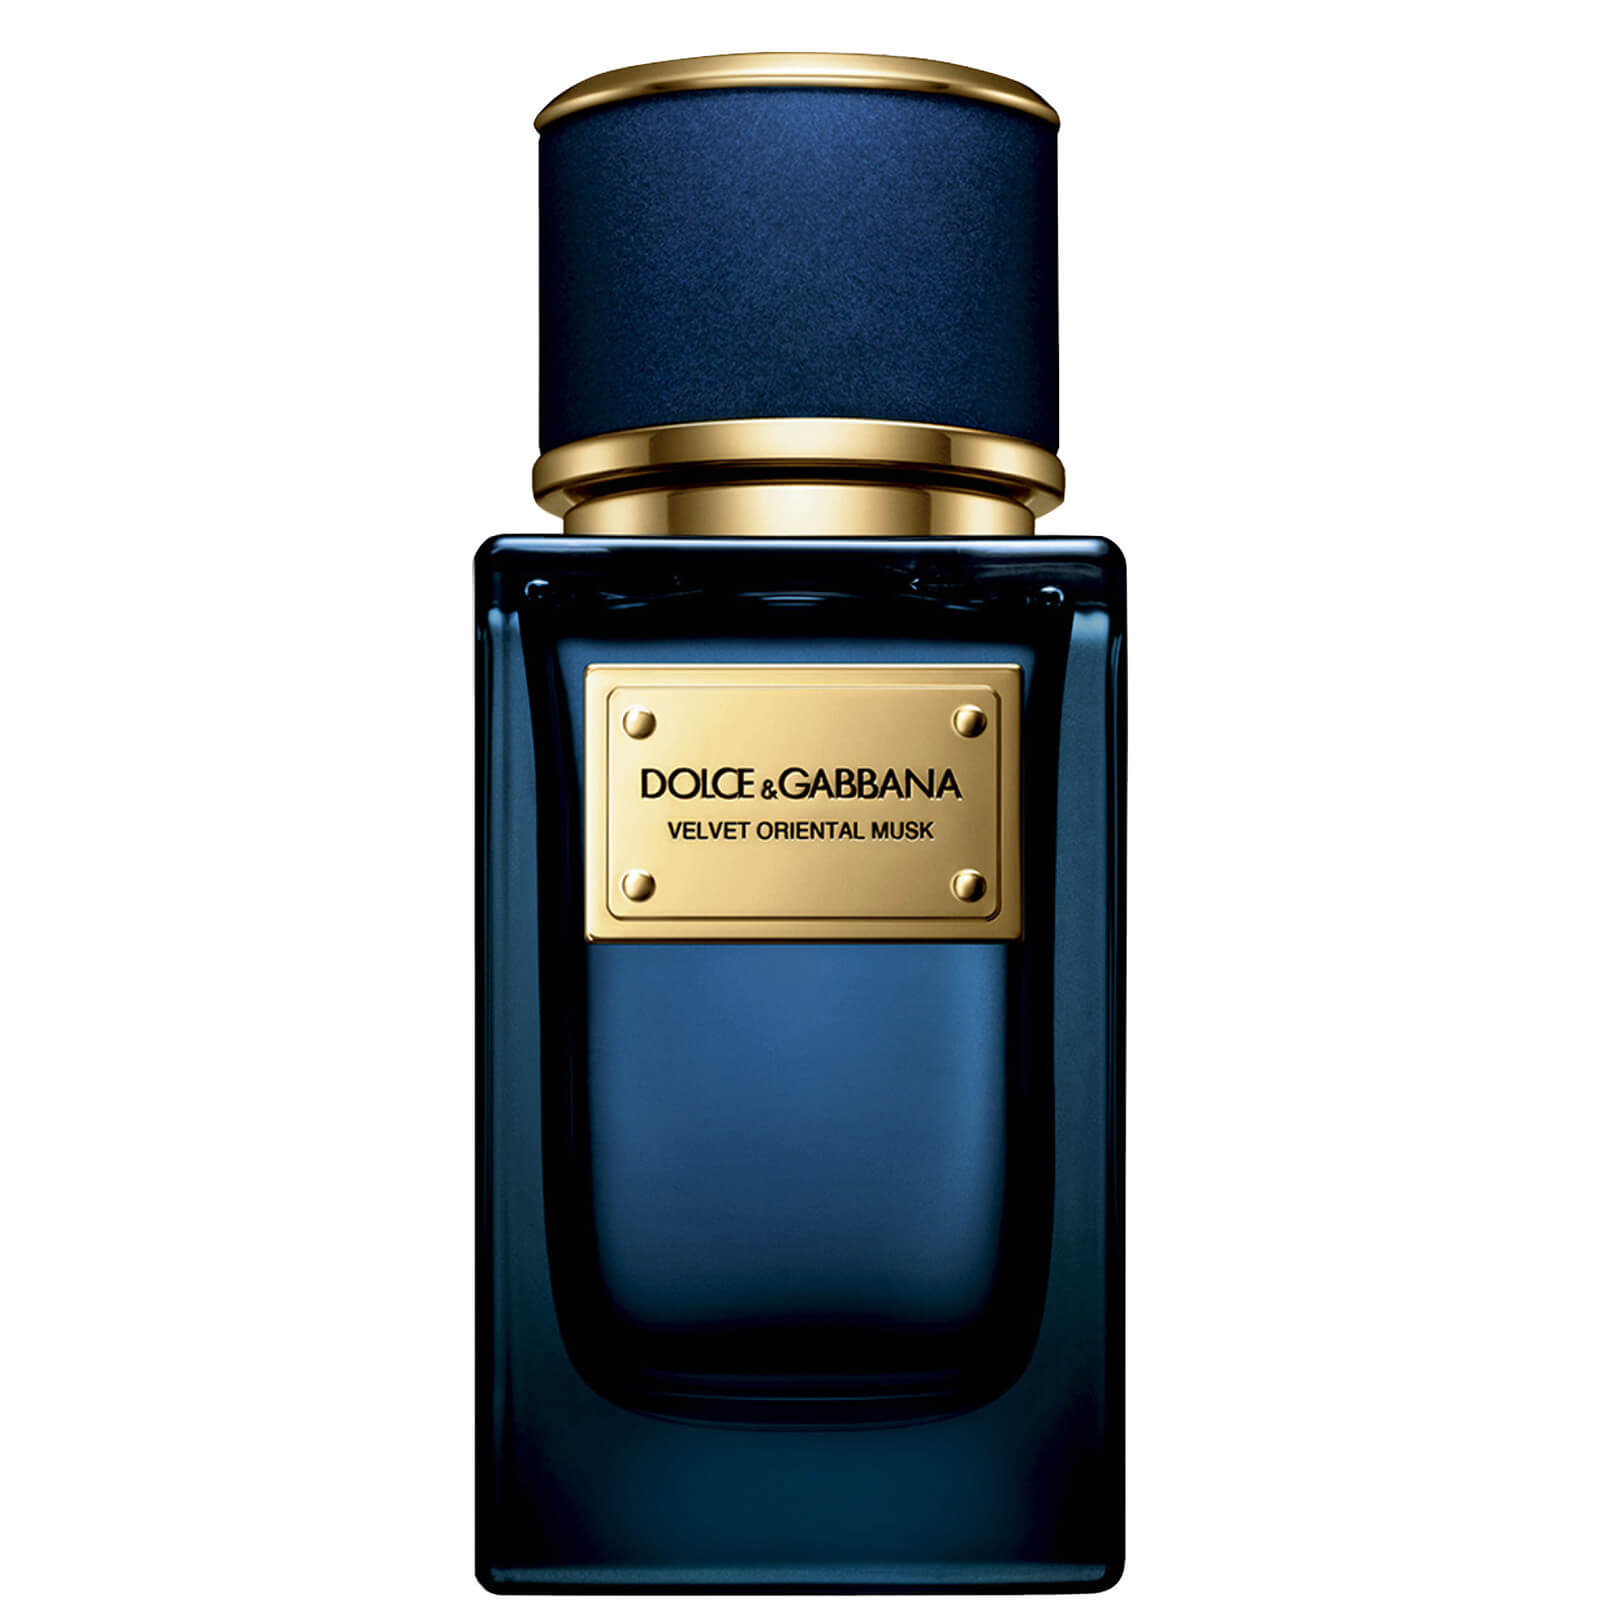 Dolce&Gabbana Velvet Oriental Musk Eau de Parfum - 50ml